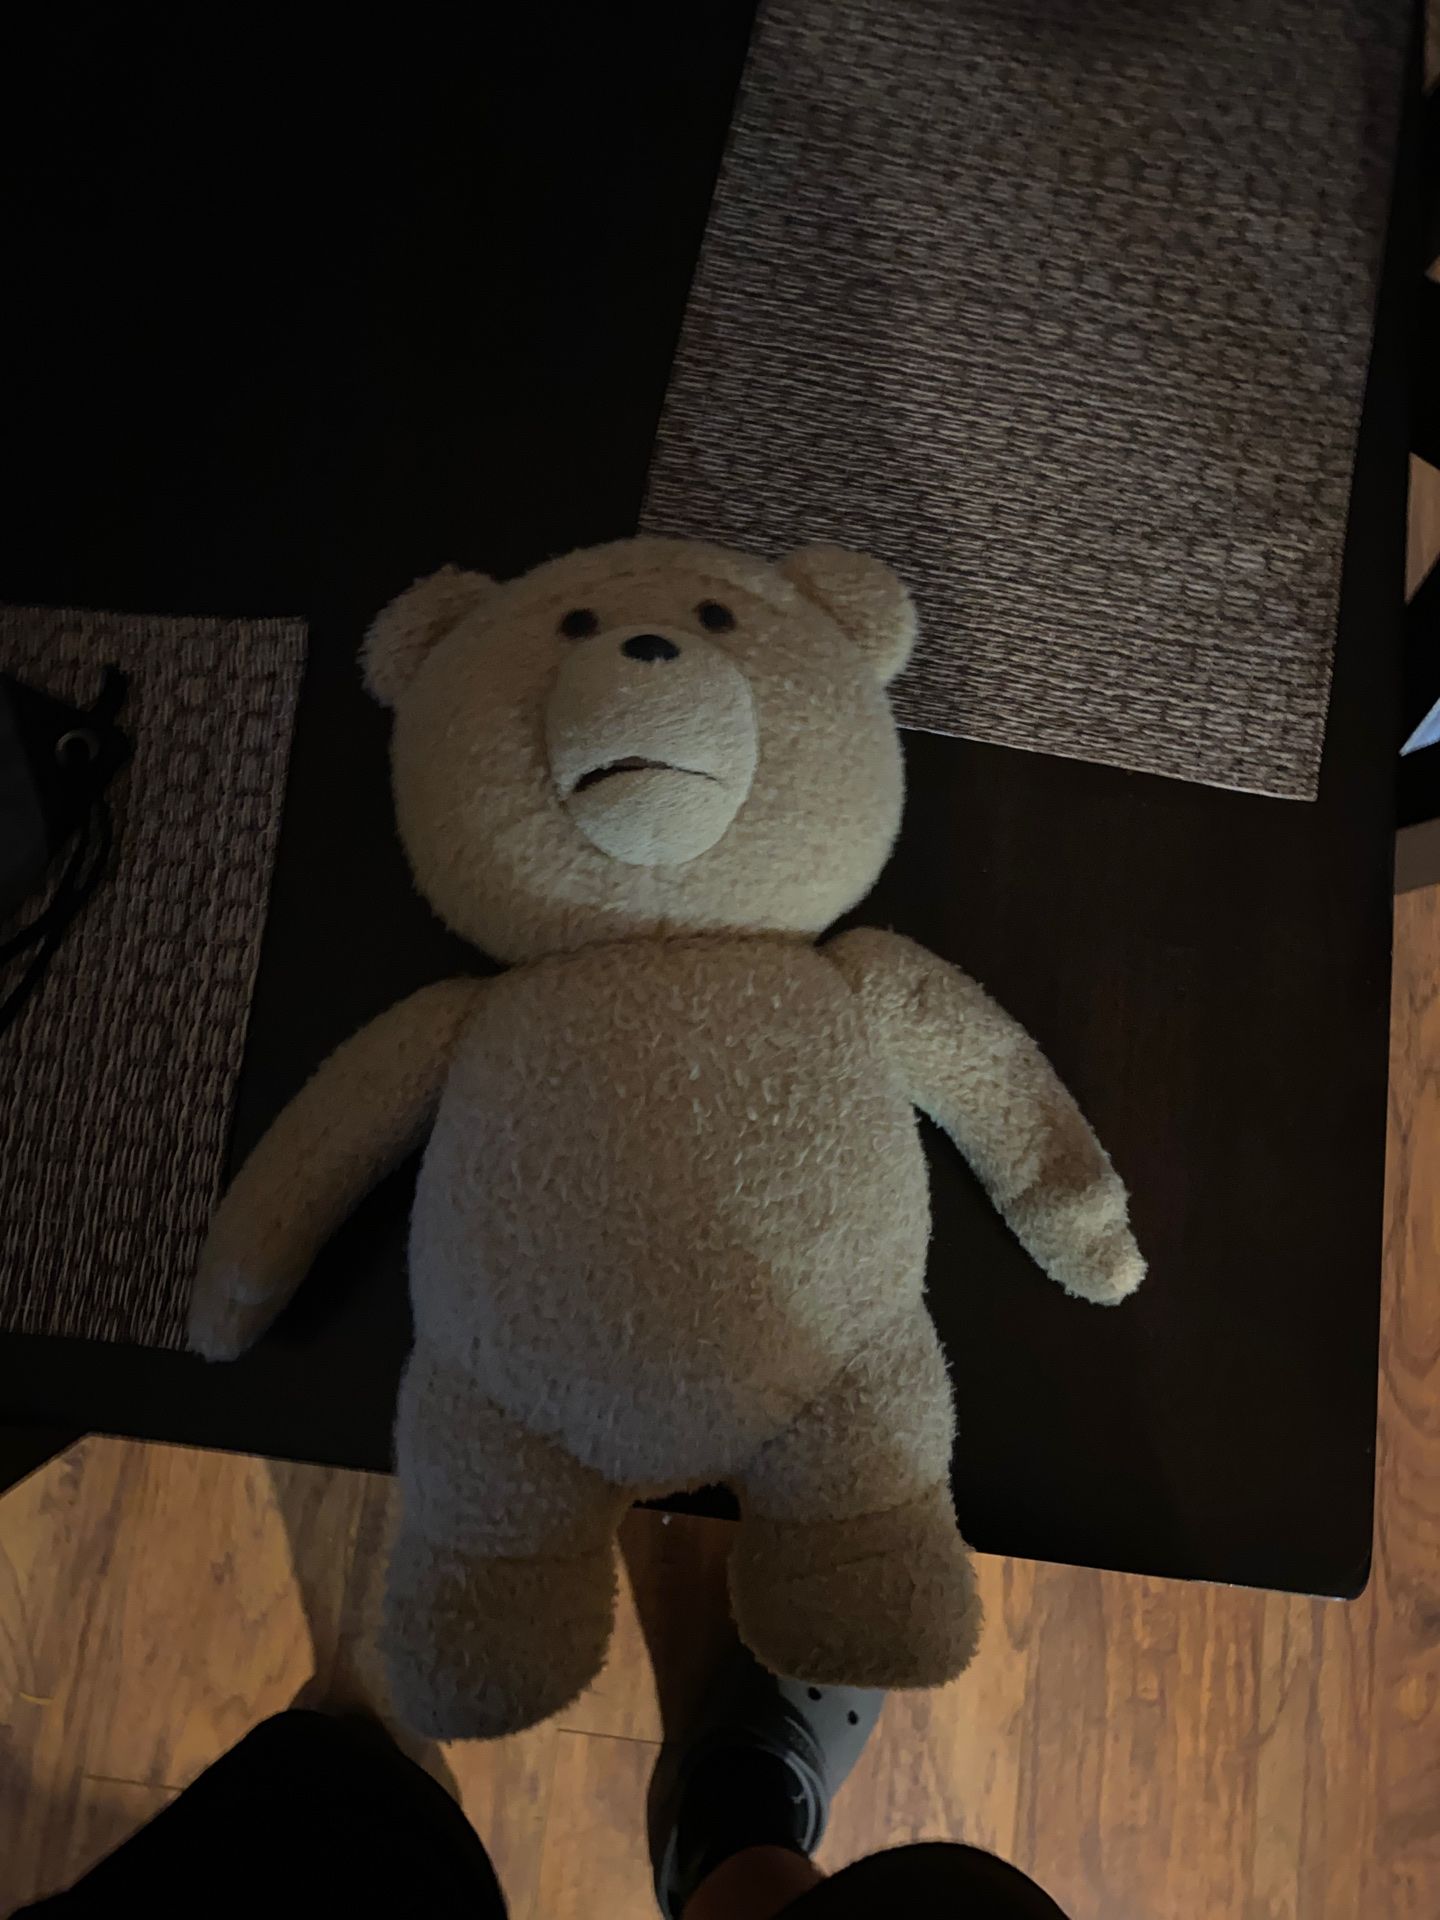 Ted the teddy bear